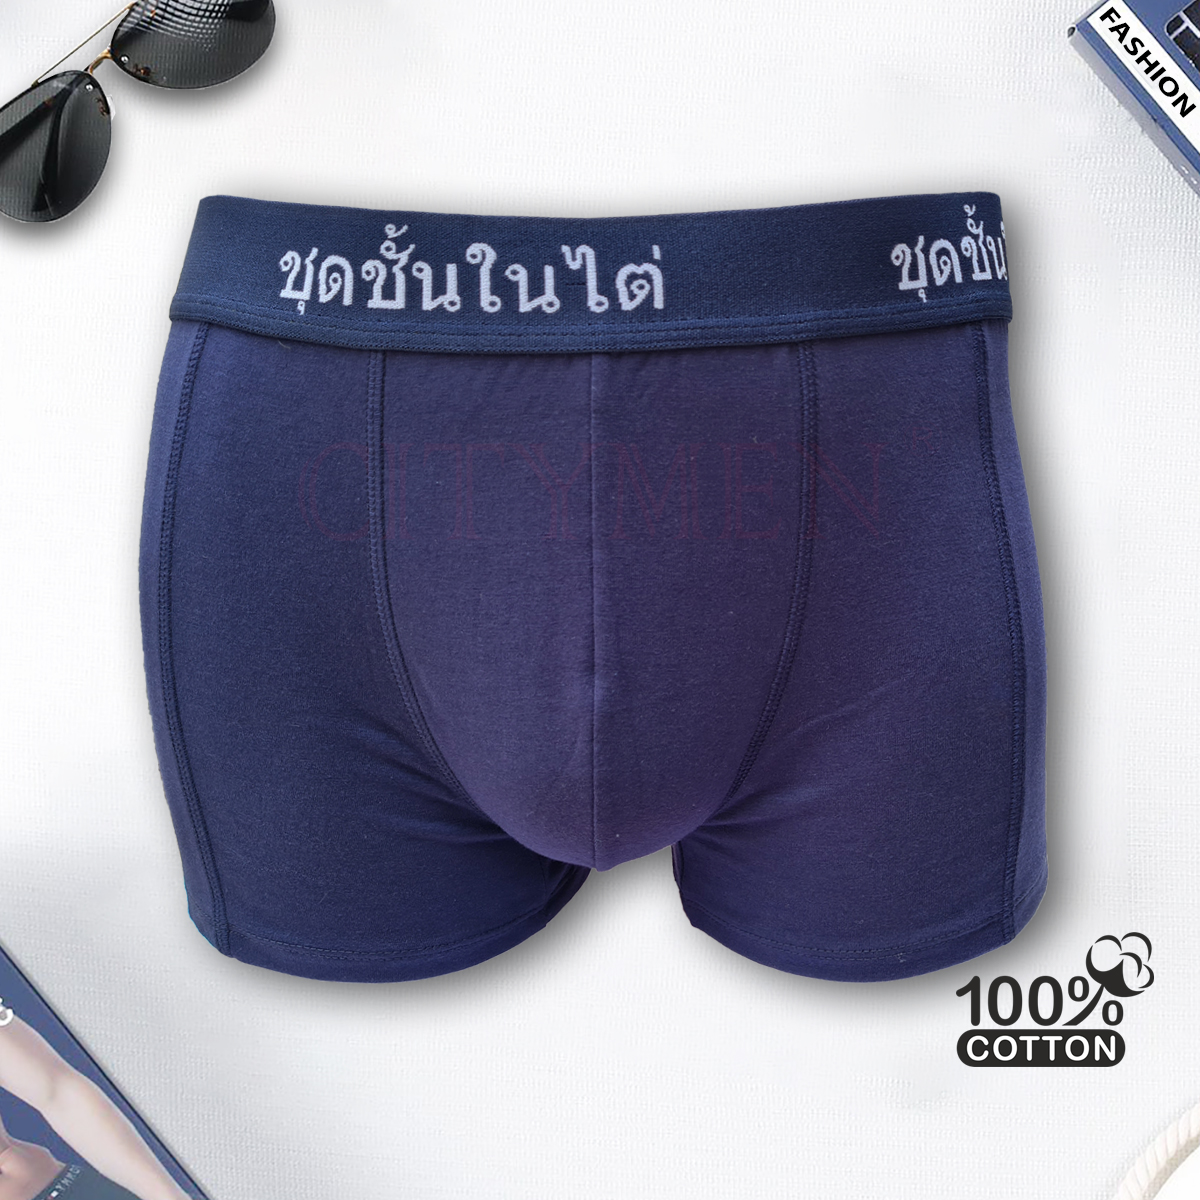 Hộp 4 Quần lót nam boxer cao cấp lưng Thái Lan CITYMEN vải cotton 4 chiều sịp đùi nam - Giao màu ngẫu nhiên